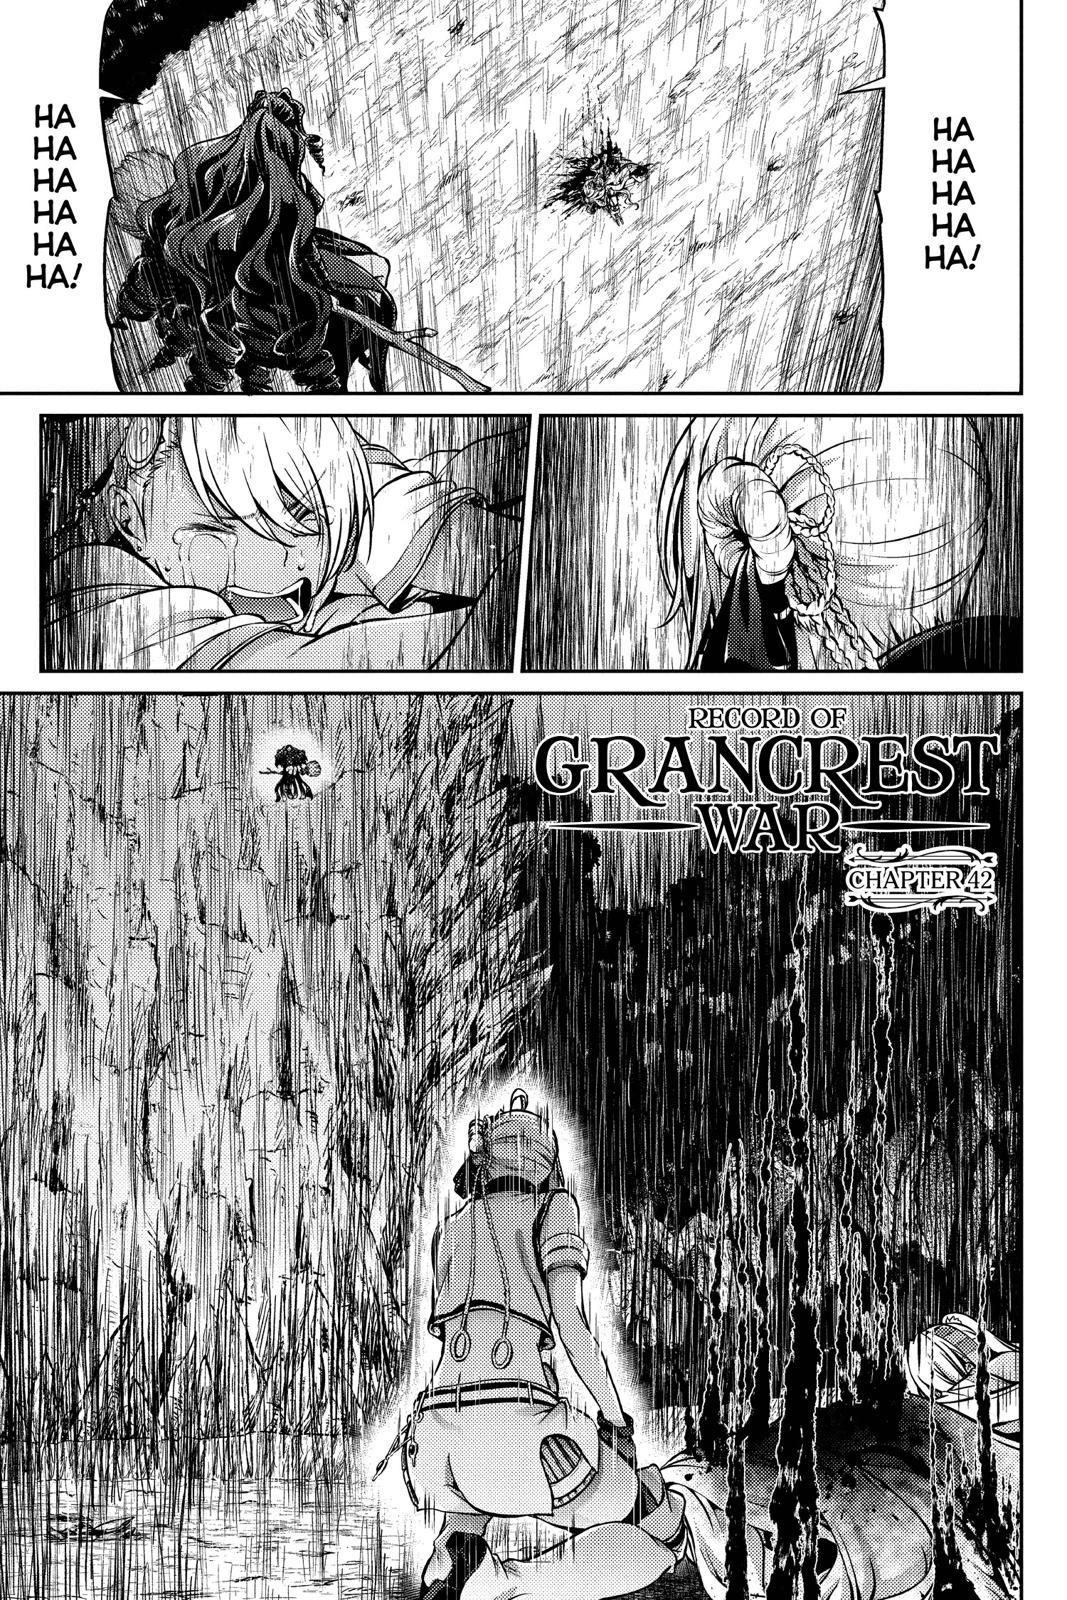 Read Grancrest Senki Chapter 19 on Mangakakalot